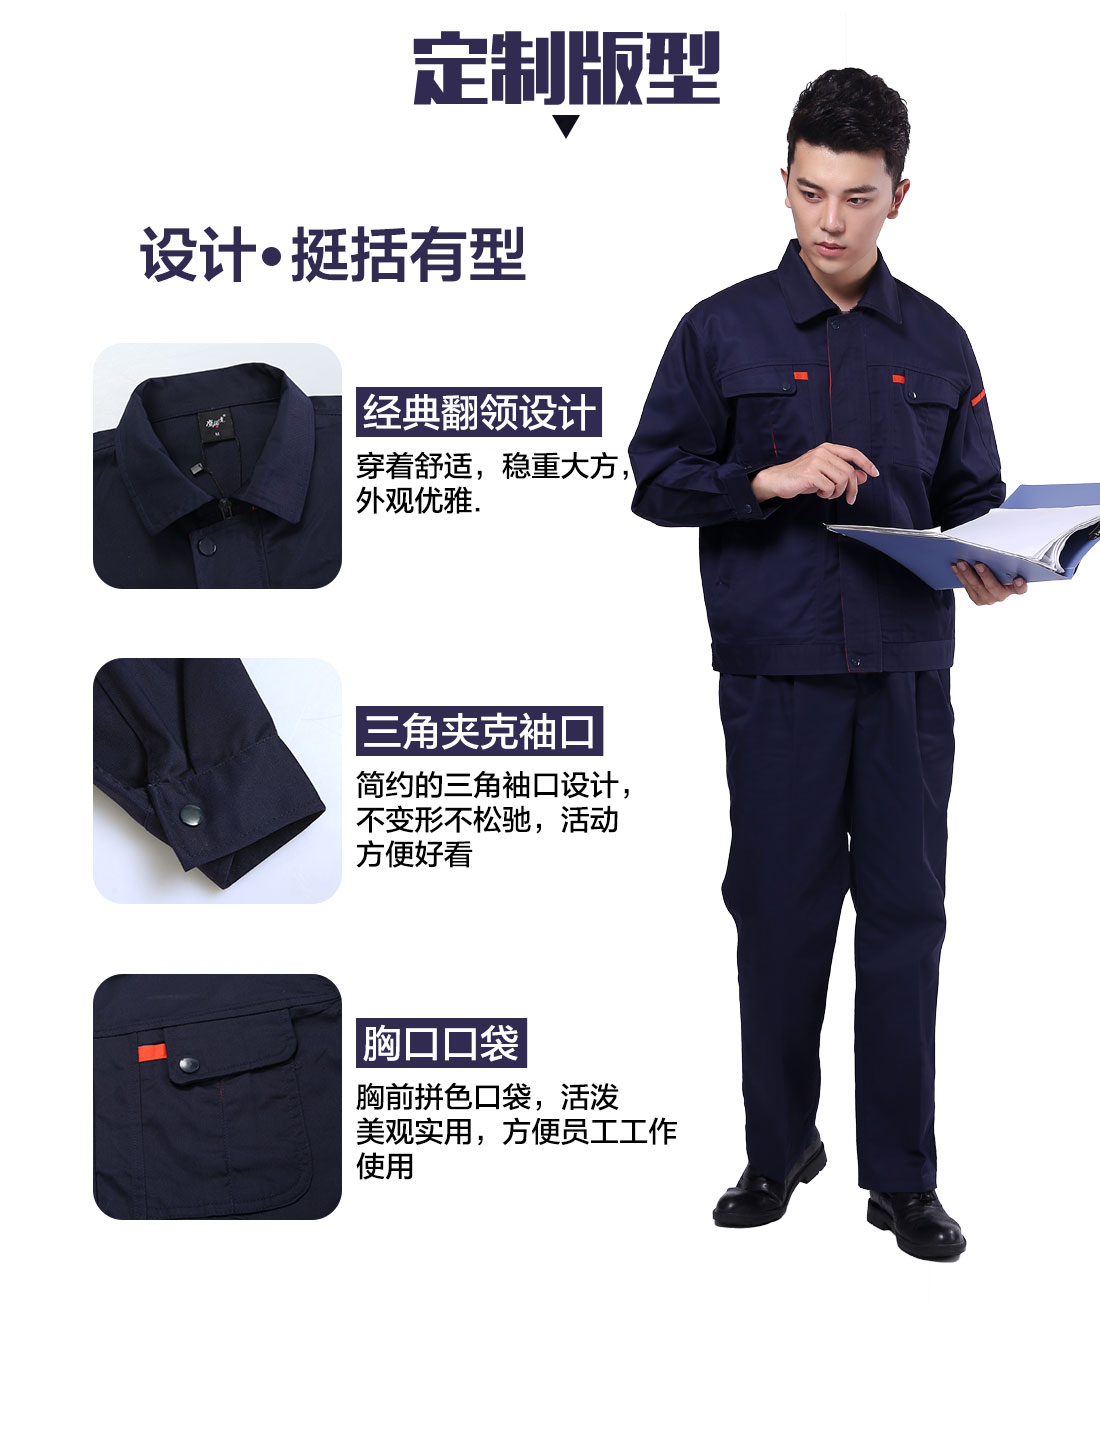 苏州 工作服设计定制版型